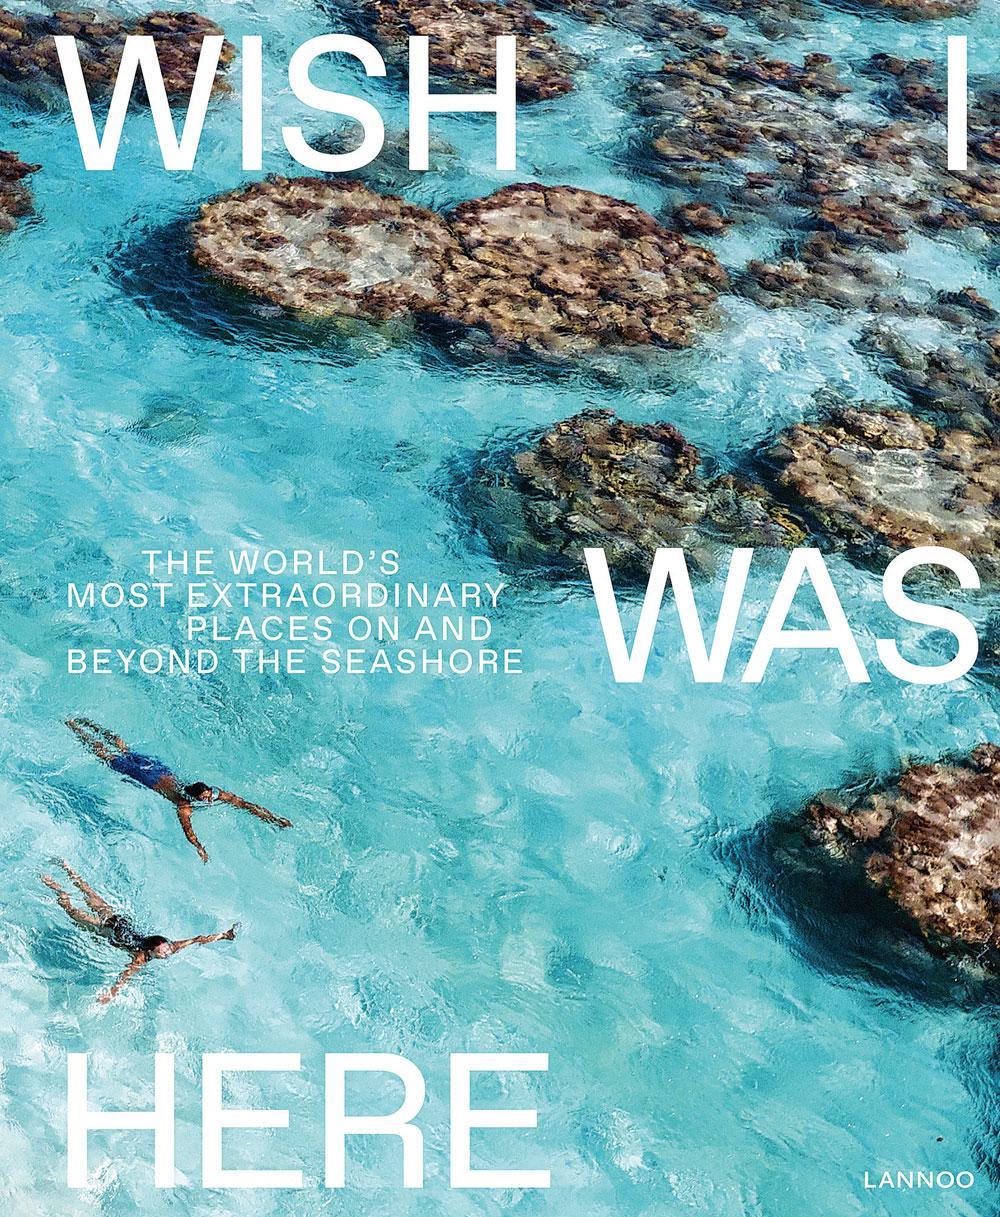 Wish I Was Here, uitgegeven bij Lannoo (39,99 euro), bevat meer dan 200 pagina's met adembenemende stranden, unieke resorts, spectaculaire onderwater-, drone- en surfbeelden en interviews met bekende fotografen die hun band met de zee omschrijven. lannoo.be/nl/wish-i-was-here